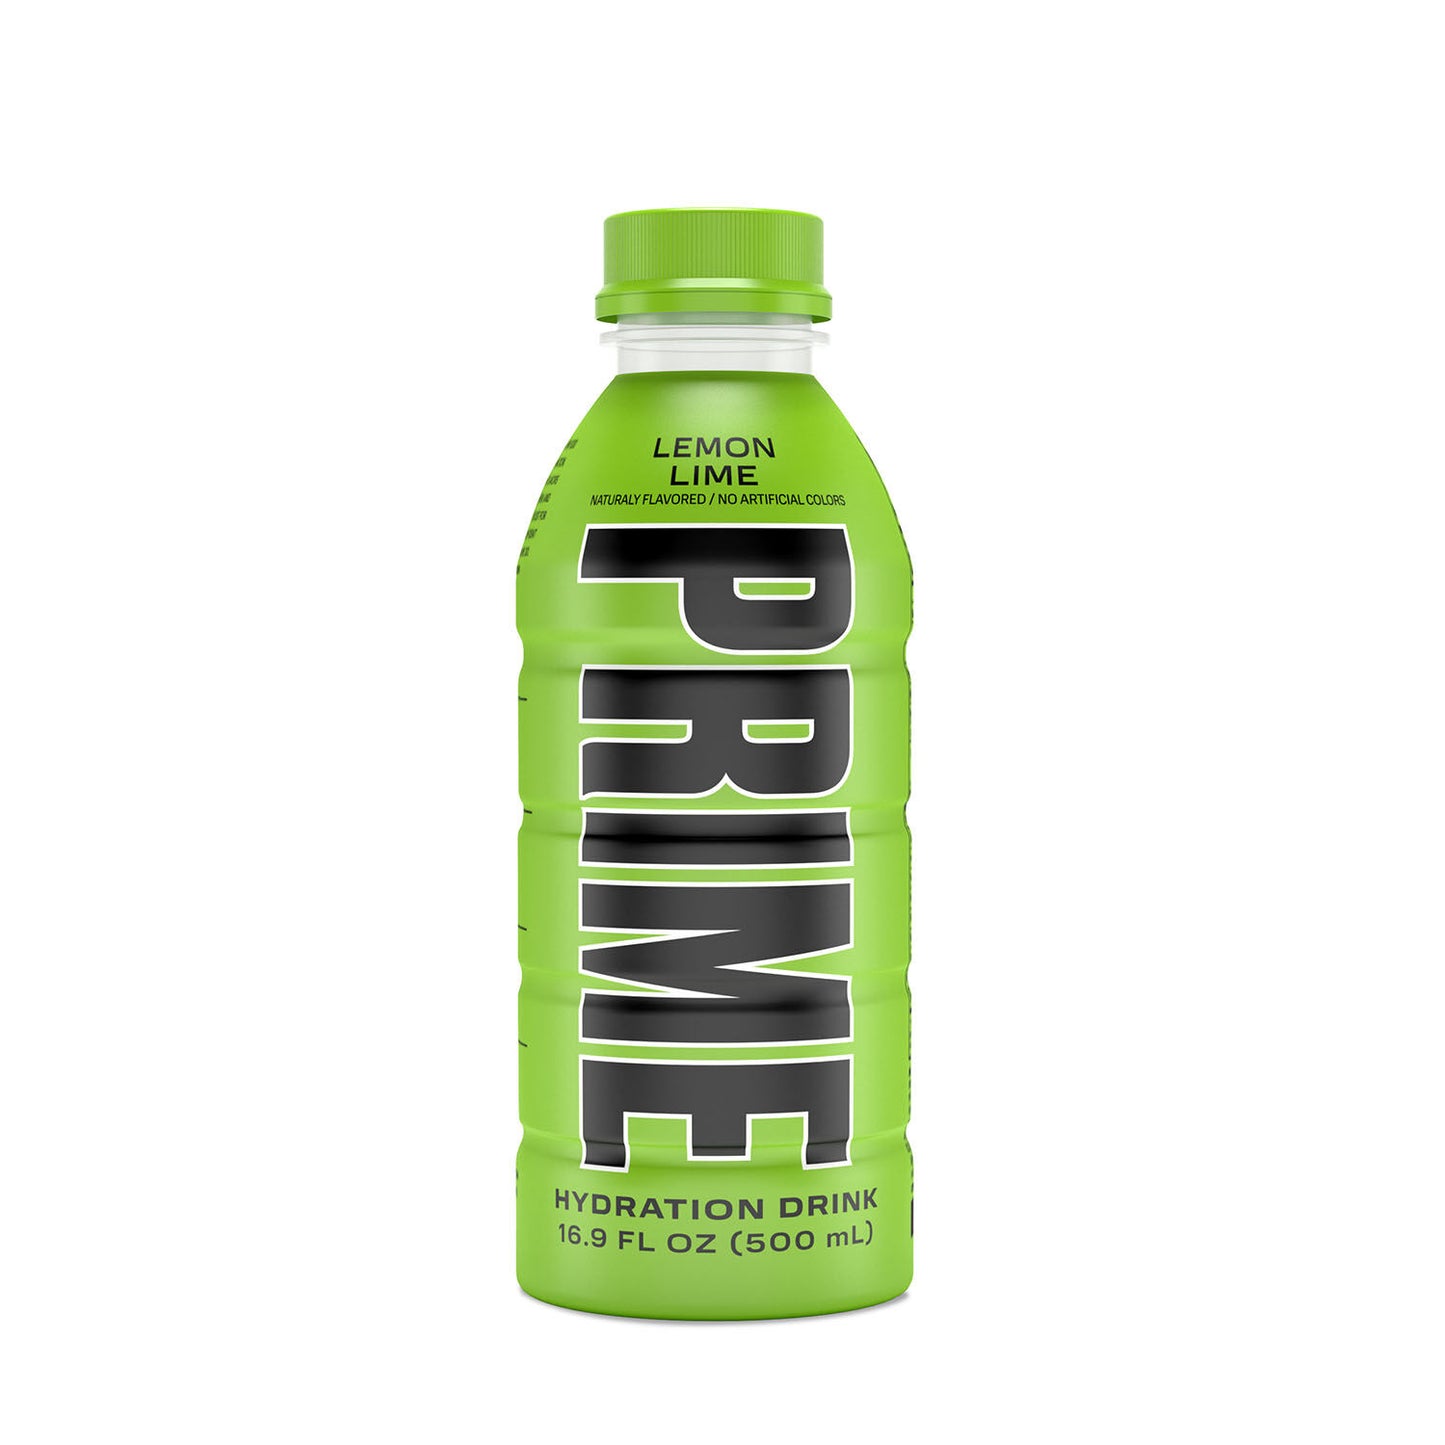 500ml bottle of Lemon Lime Prime